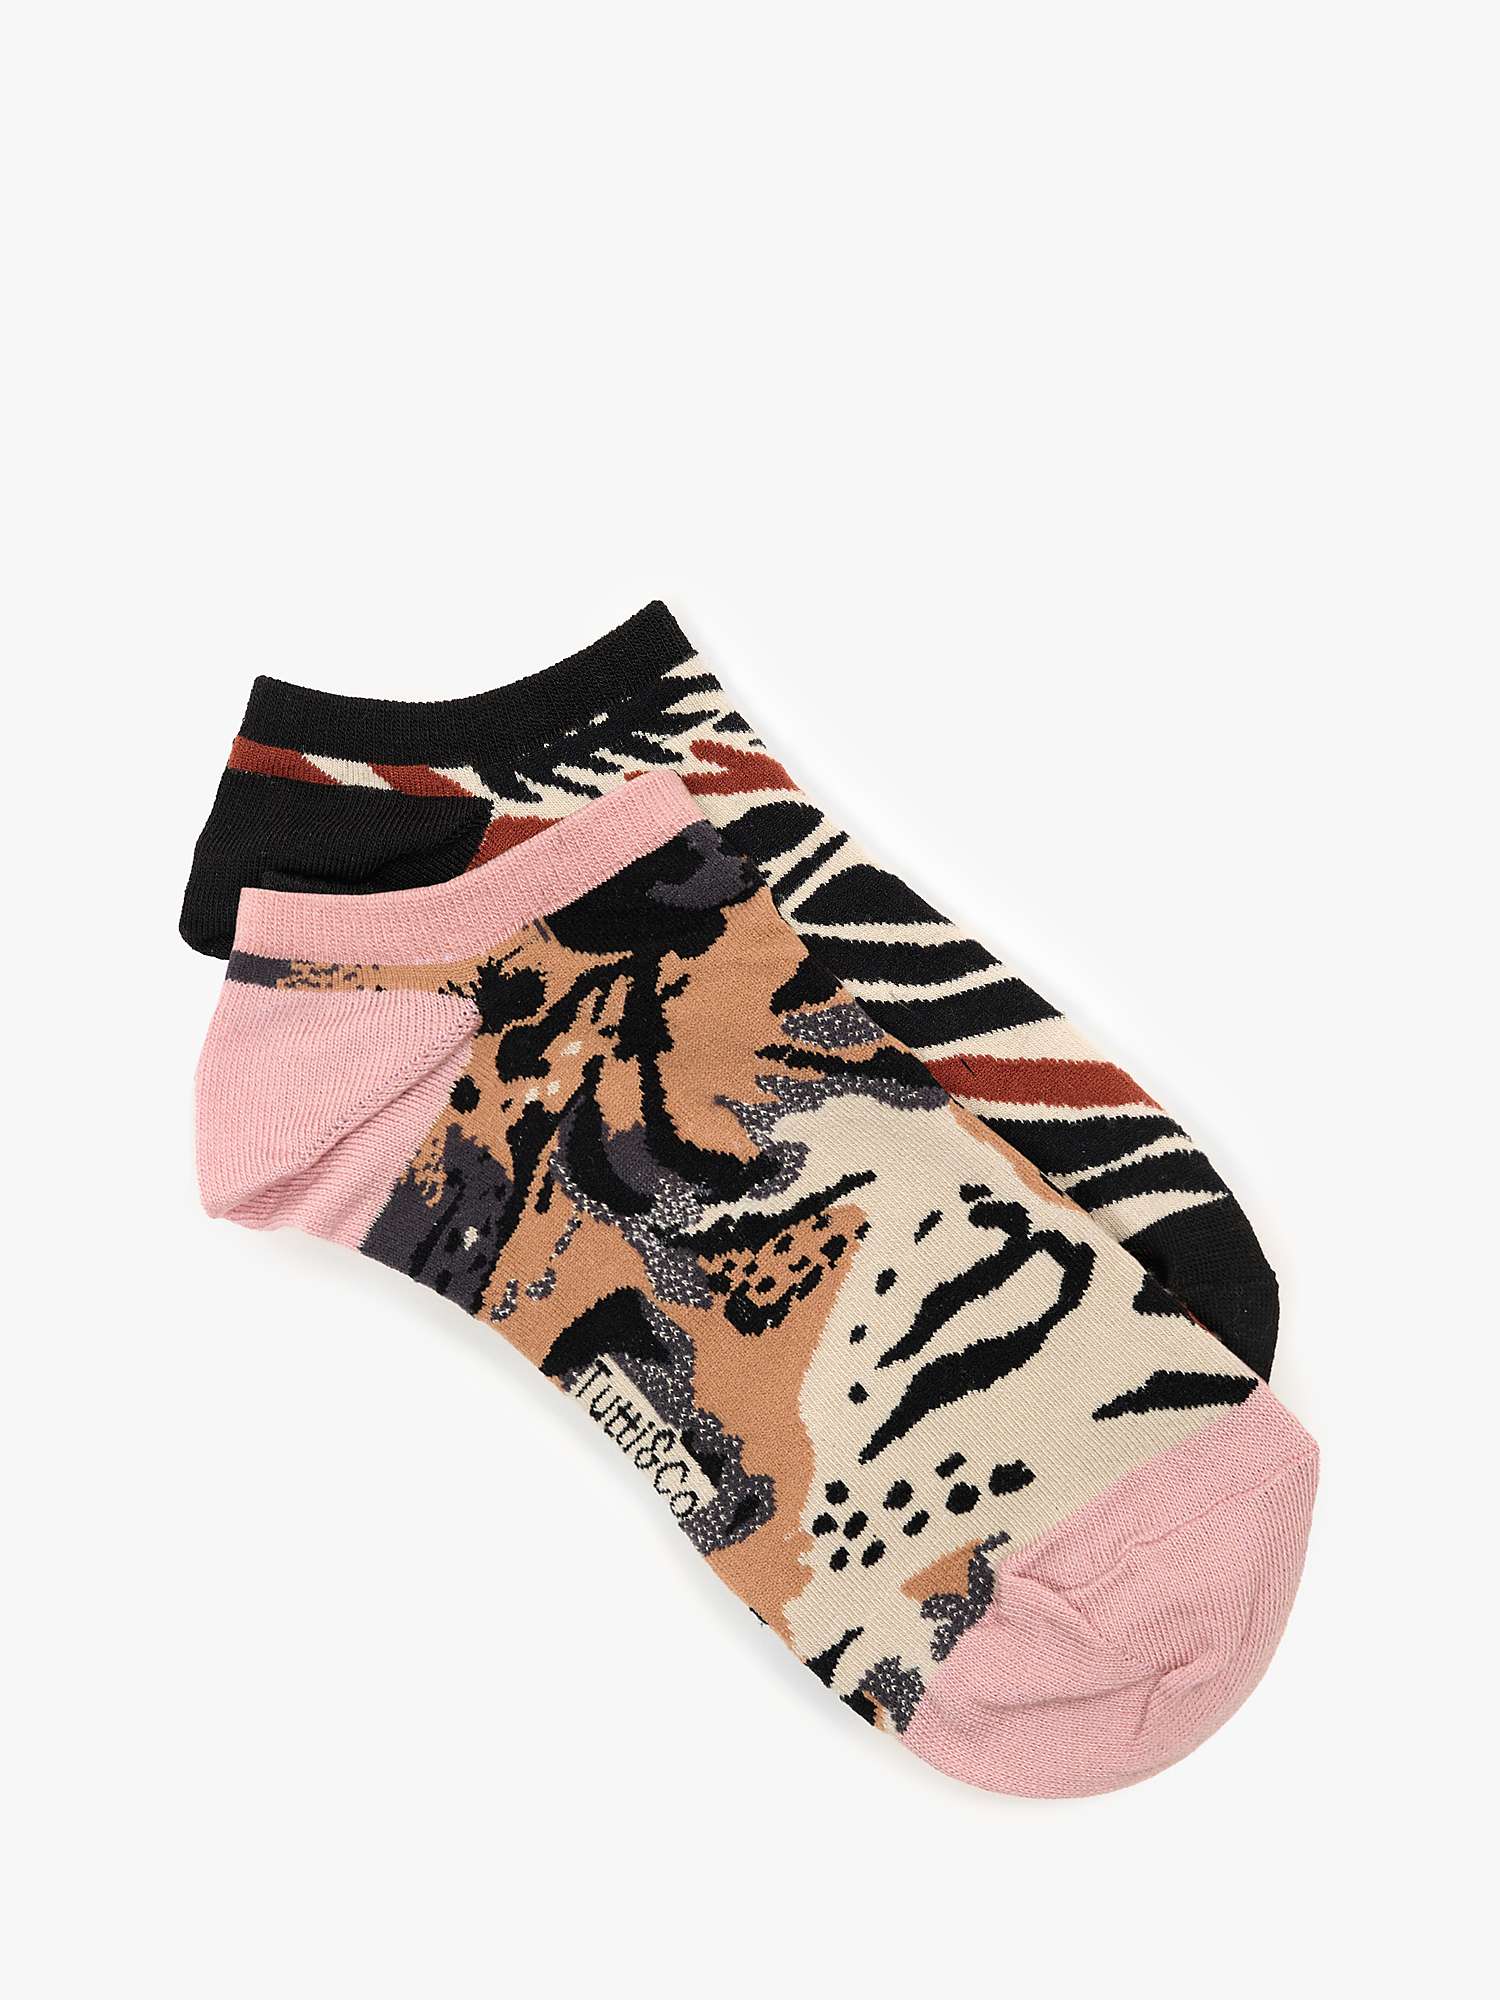 Buy Tutti & Co Animal Stripe Bamboo Blend Trainer Socks, Pack of 2, Black/Multi Online at johnlewis.com